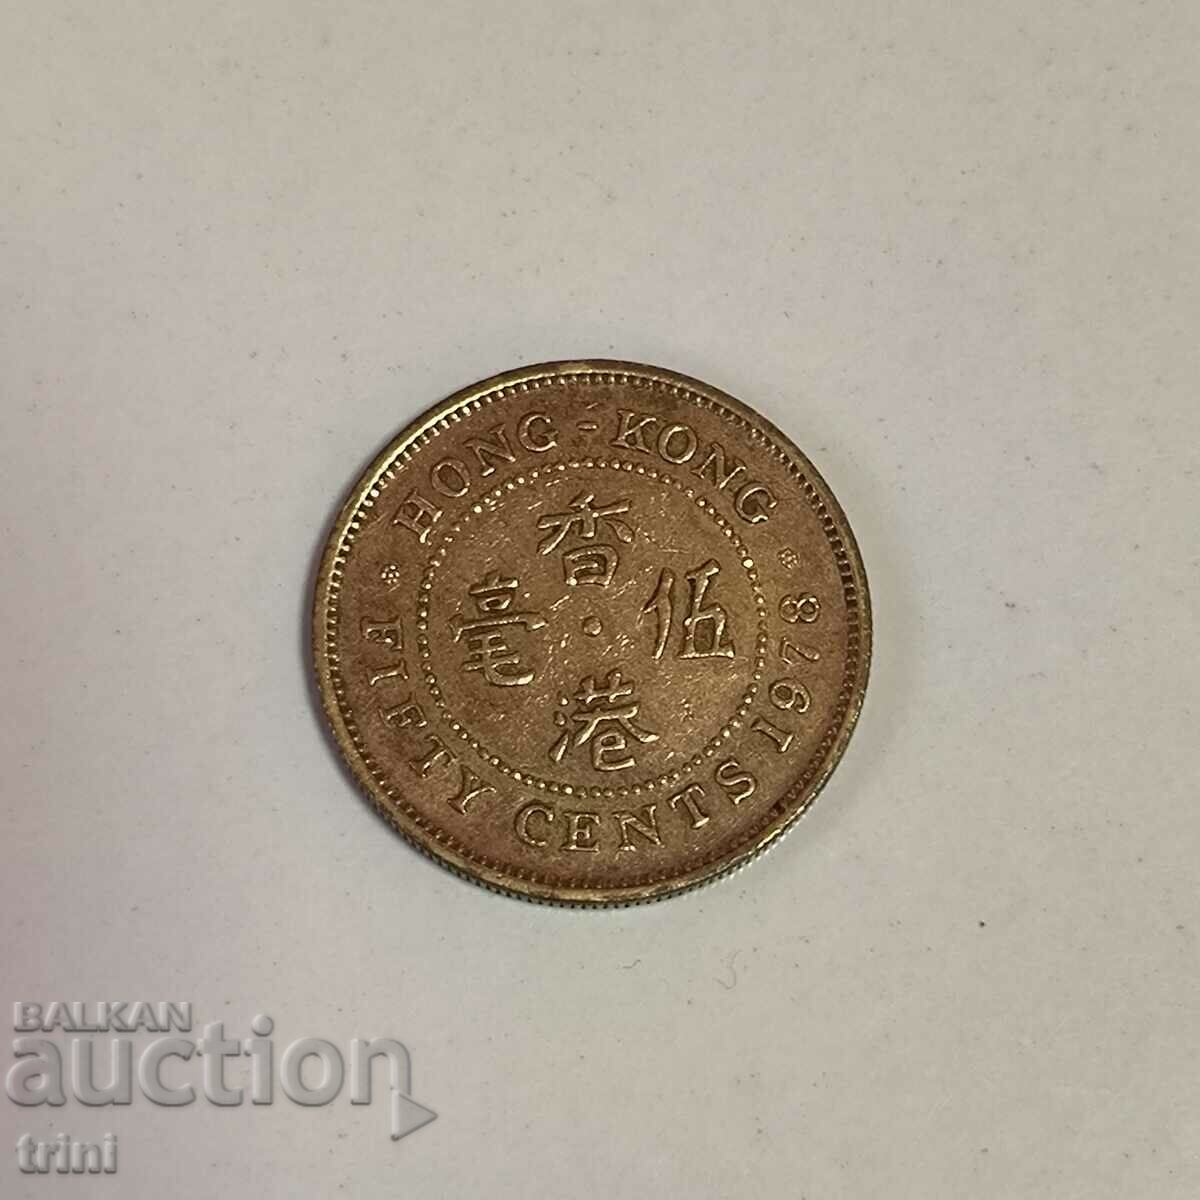 Hong Kong 50 cents 1978 year g75